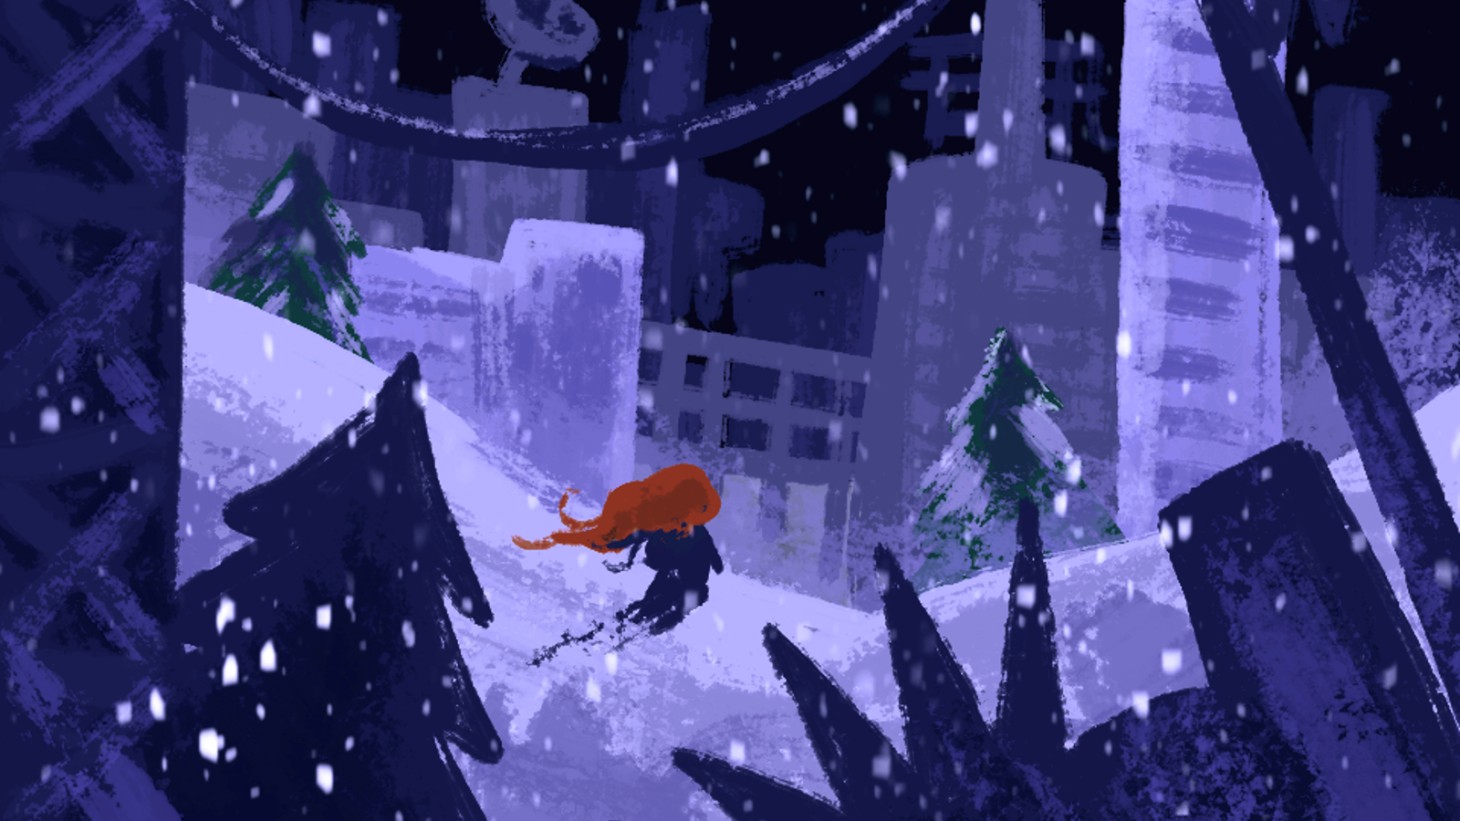 Celeste 64: Fragmente des Berges ist ein kostenloser 3D-Plattformer, der das 6-jährige Jubiläum des Spiels feiert